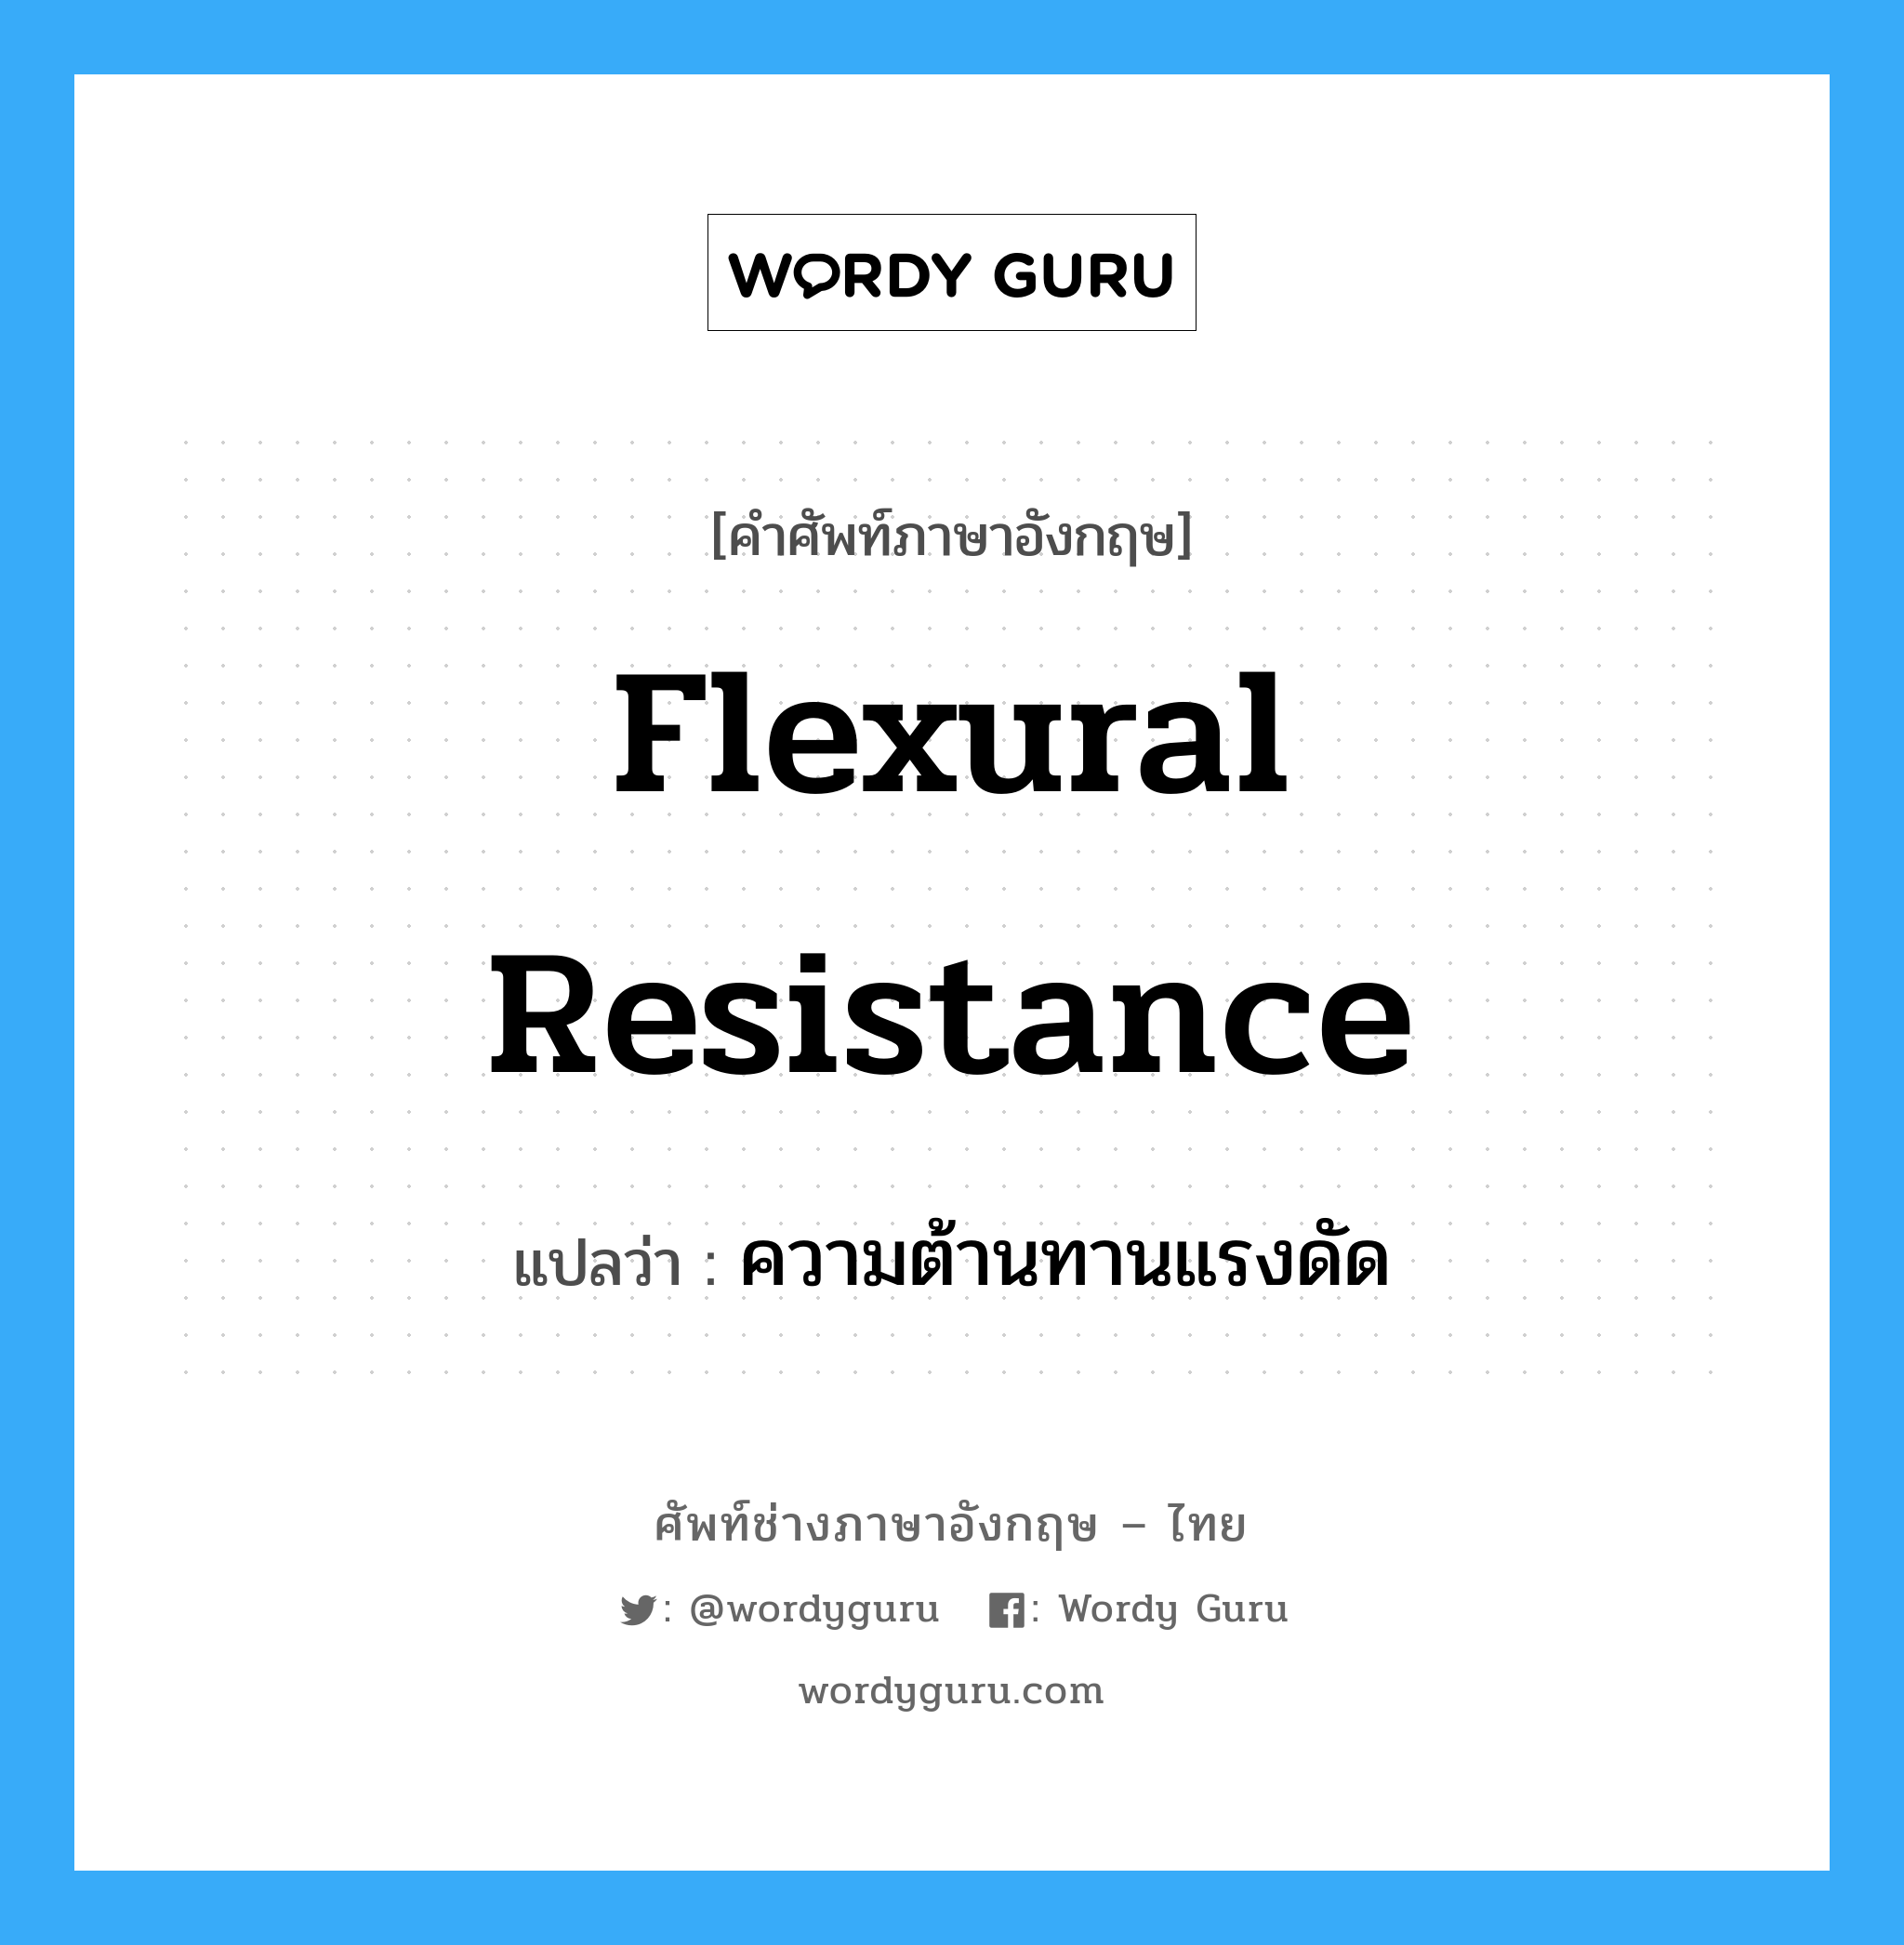 flexural resistance แปลว่า?, คำศัพท์ช่างภาษาอังกฤษ - ไทย flexural resistance คำศัพท์ภาษาอังกฤษ flexural resistance แปลว่า ความต้านทานแรงดัด